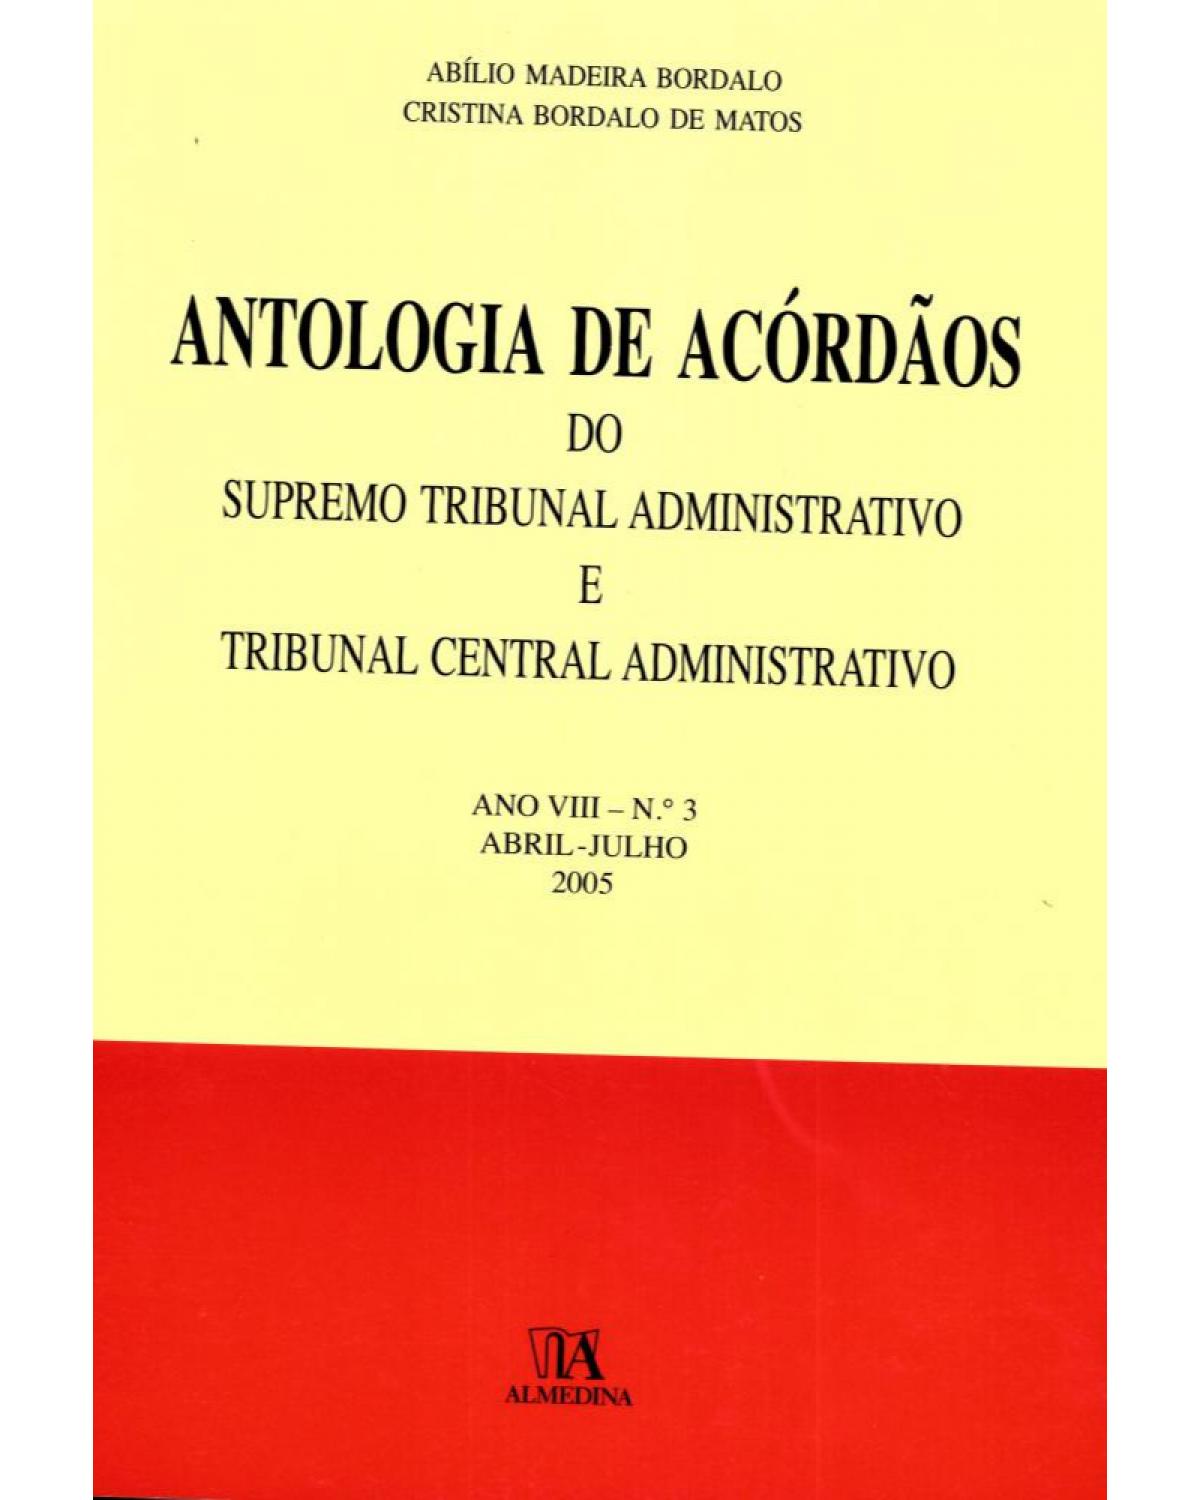 Antologia de acórdãos do supremo tribunal administrativo e tribunal central administrativo - ano VIII - Abril-julho 2005 - 1ª Edição | 2006